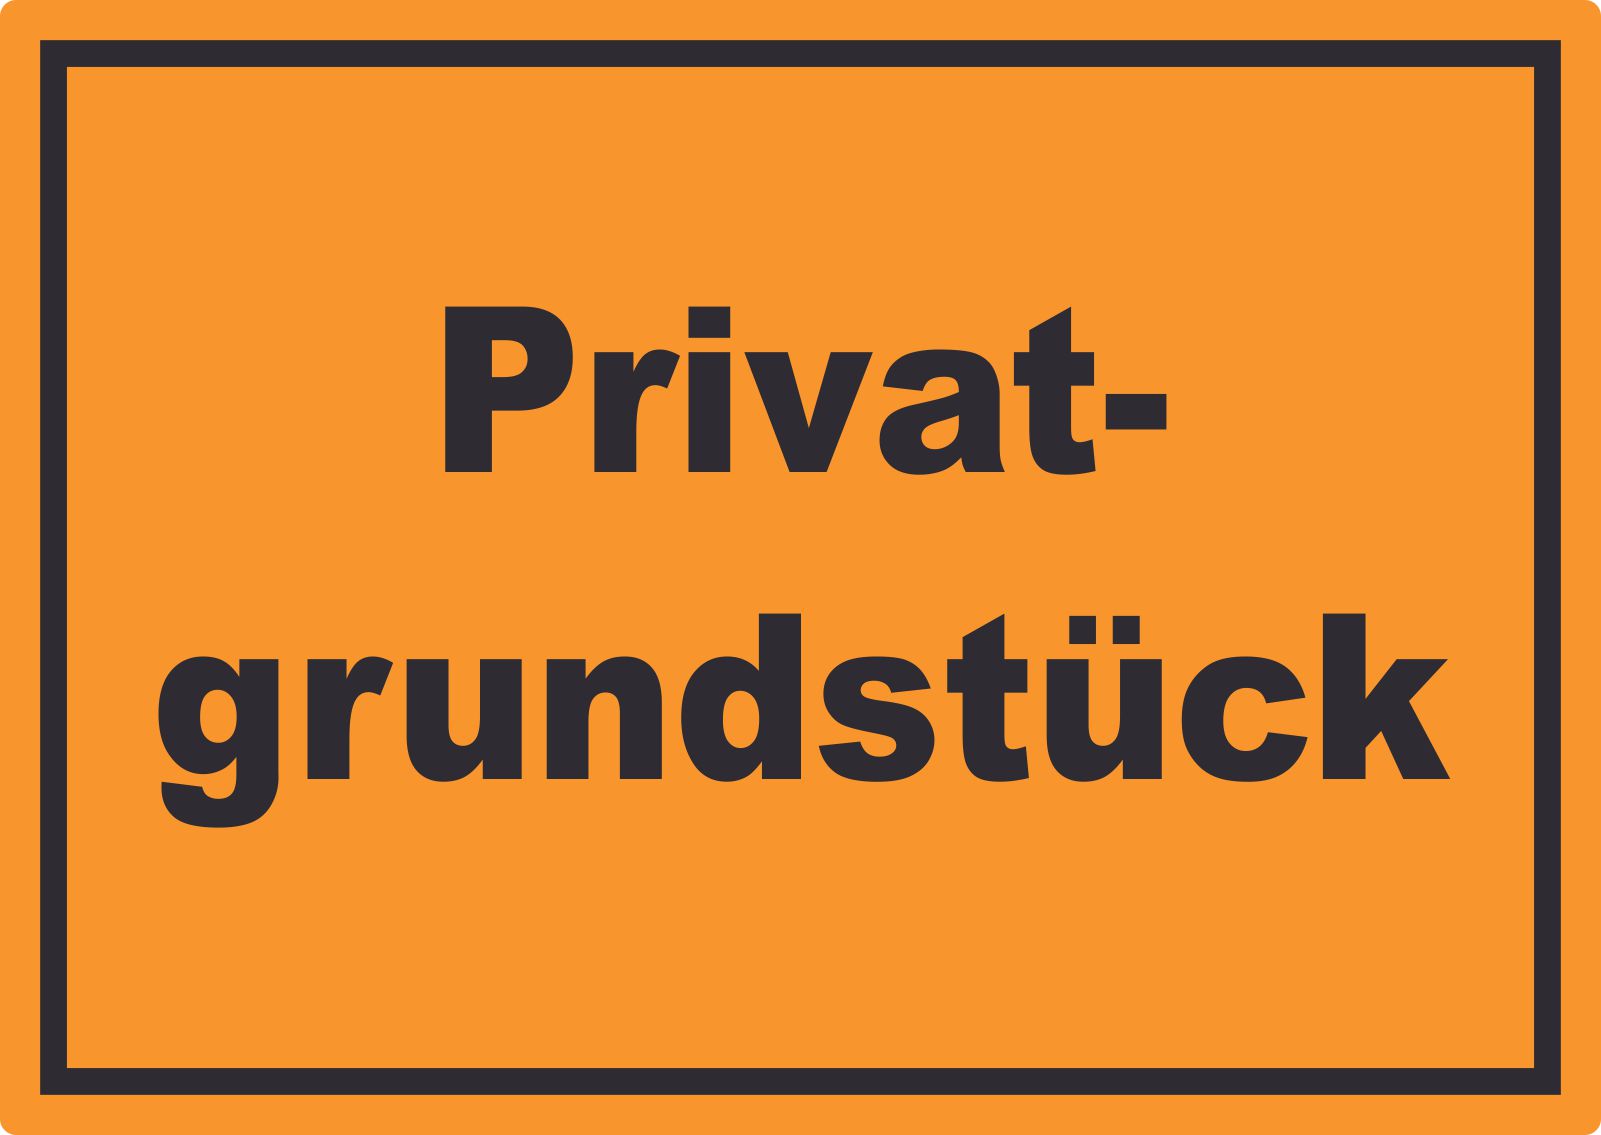 Privatgrundstück Schild schwarz-orange  HB-Druck Schilder, Textildruck & Stickerei  Onlineshop